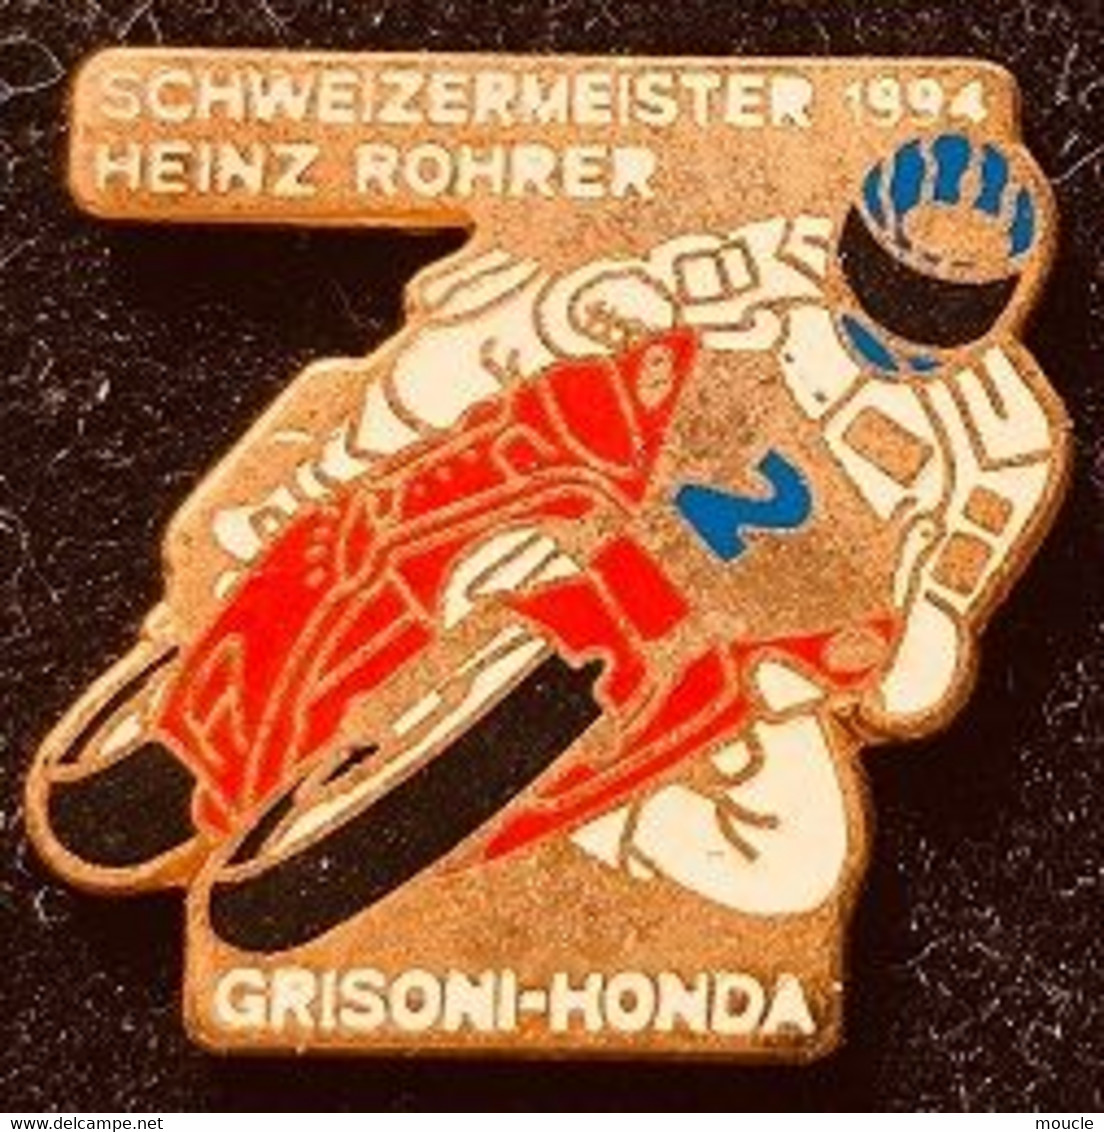 MOTO N°2 - SCHWEIZERMEISTER 1994 - GRISONI - HONDA - CHAMPIONNAT SUISSE - HEINZ ROHRER - CASQUE -   (27) - Motos